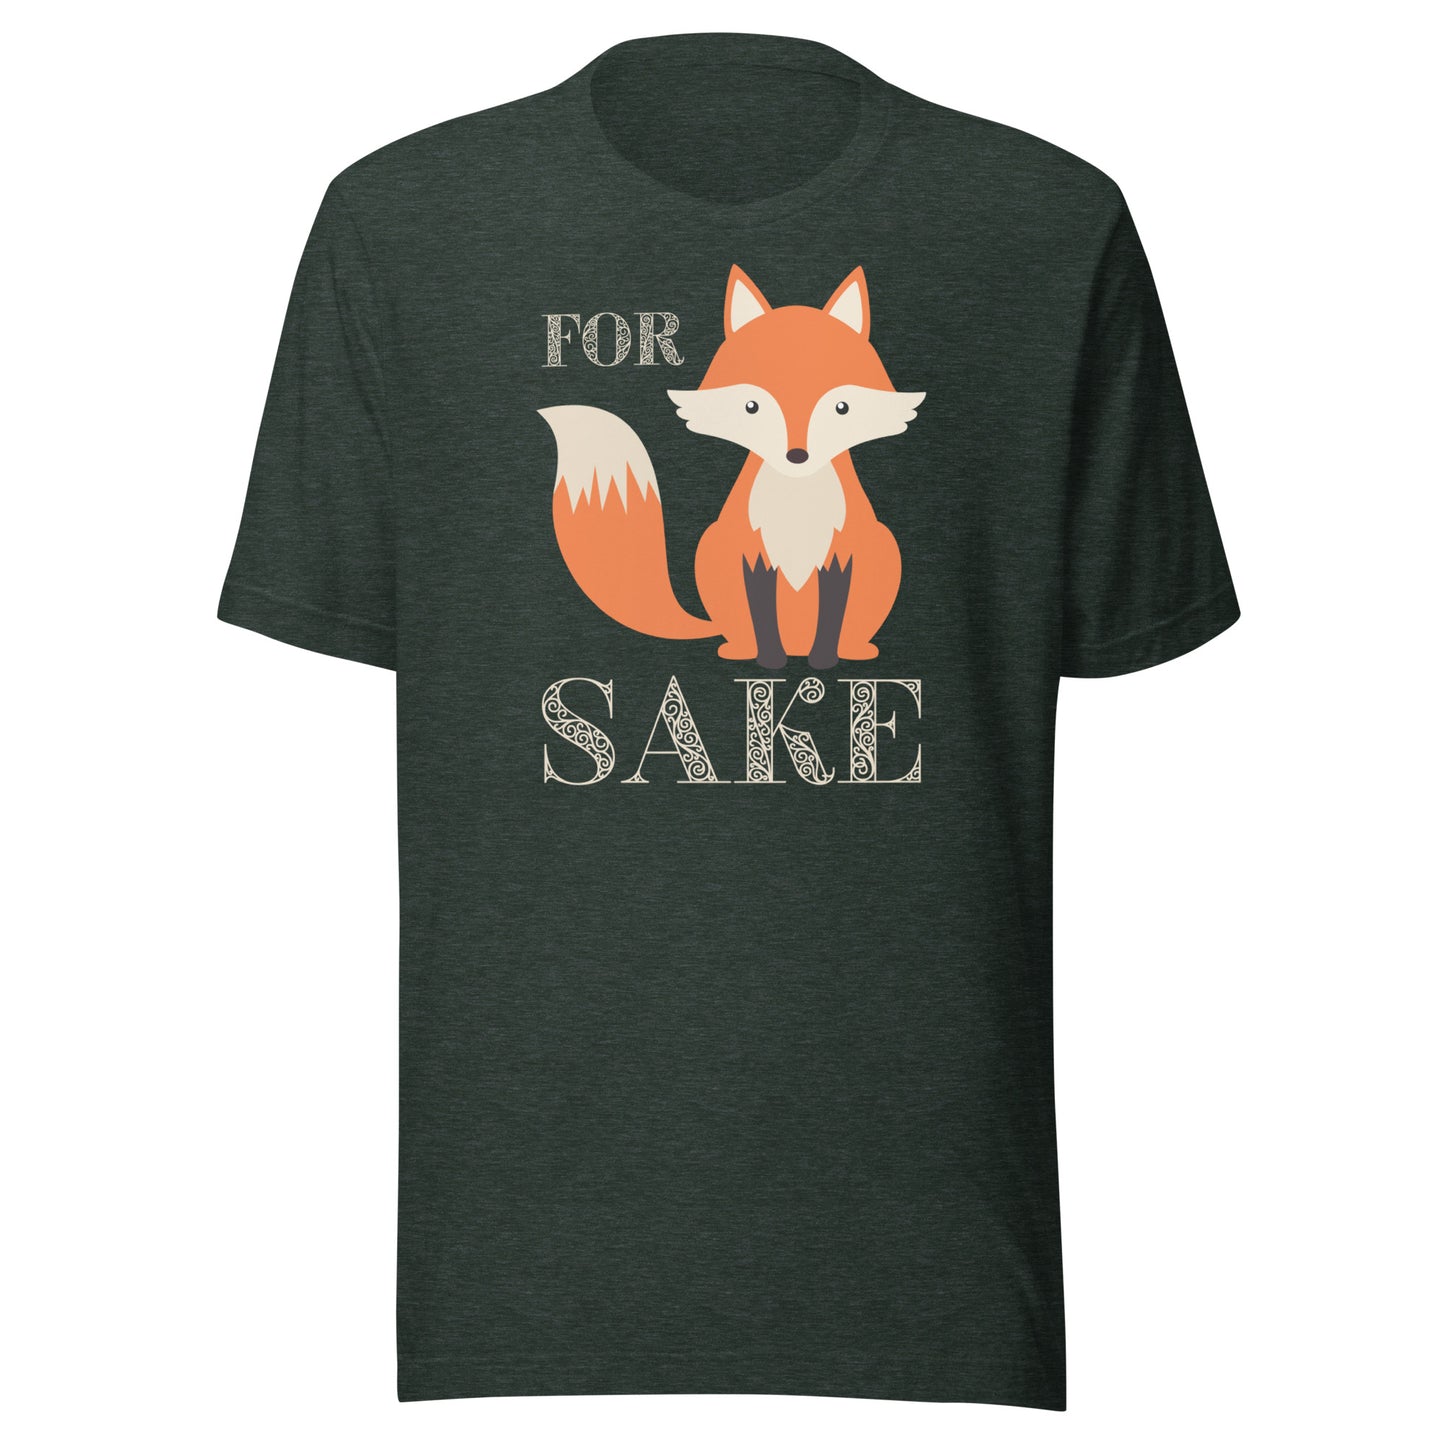 For Fox Sake Unisex t-shirt